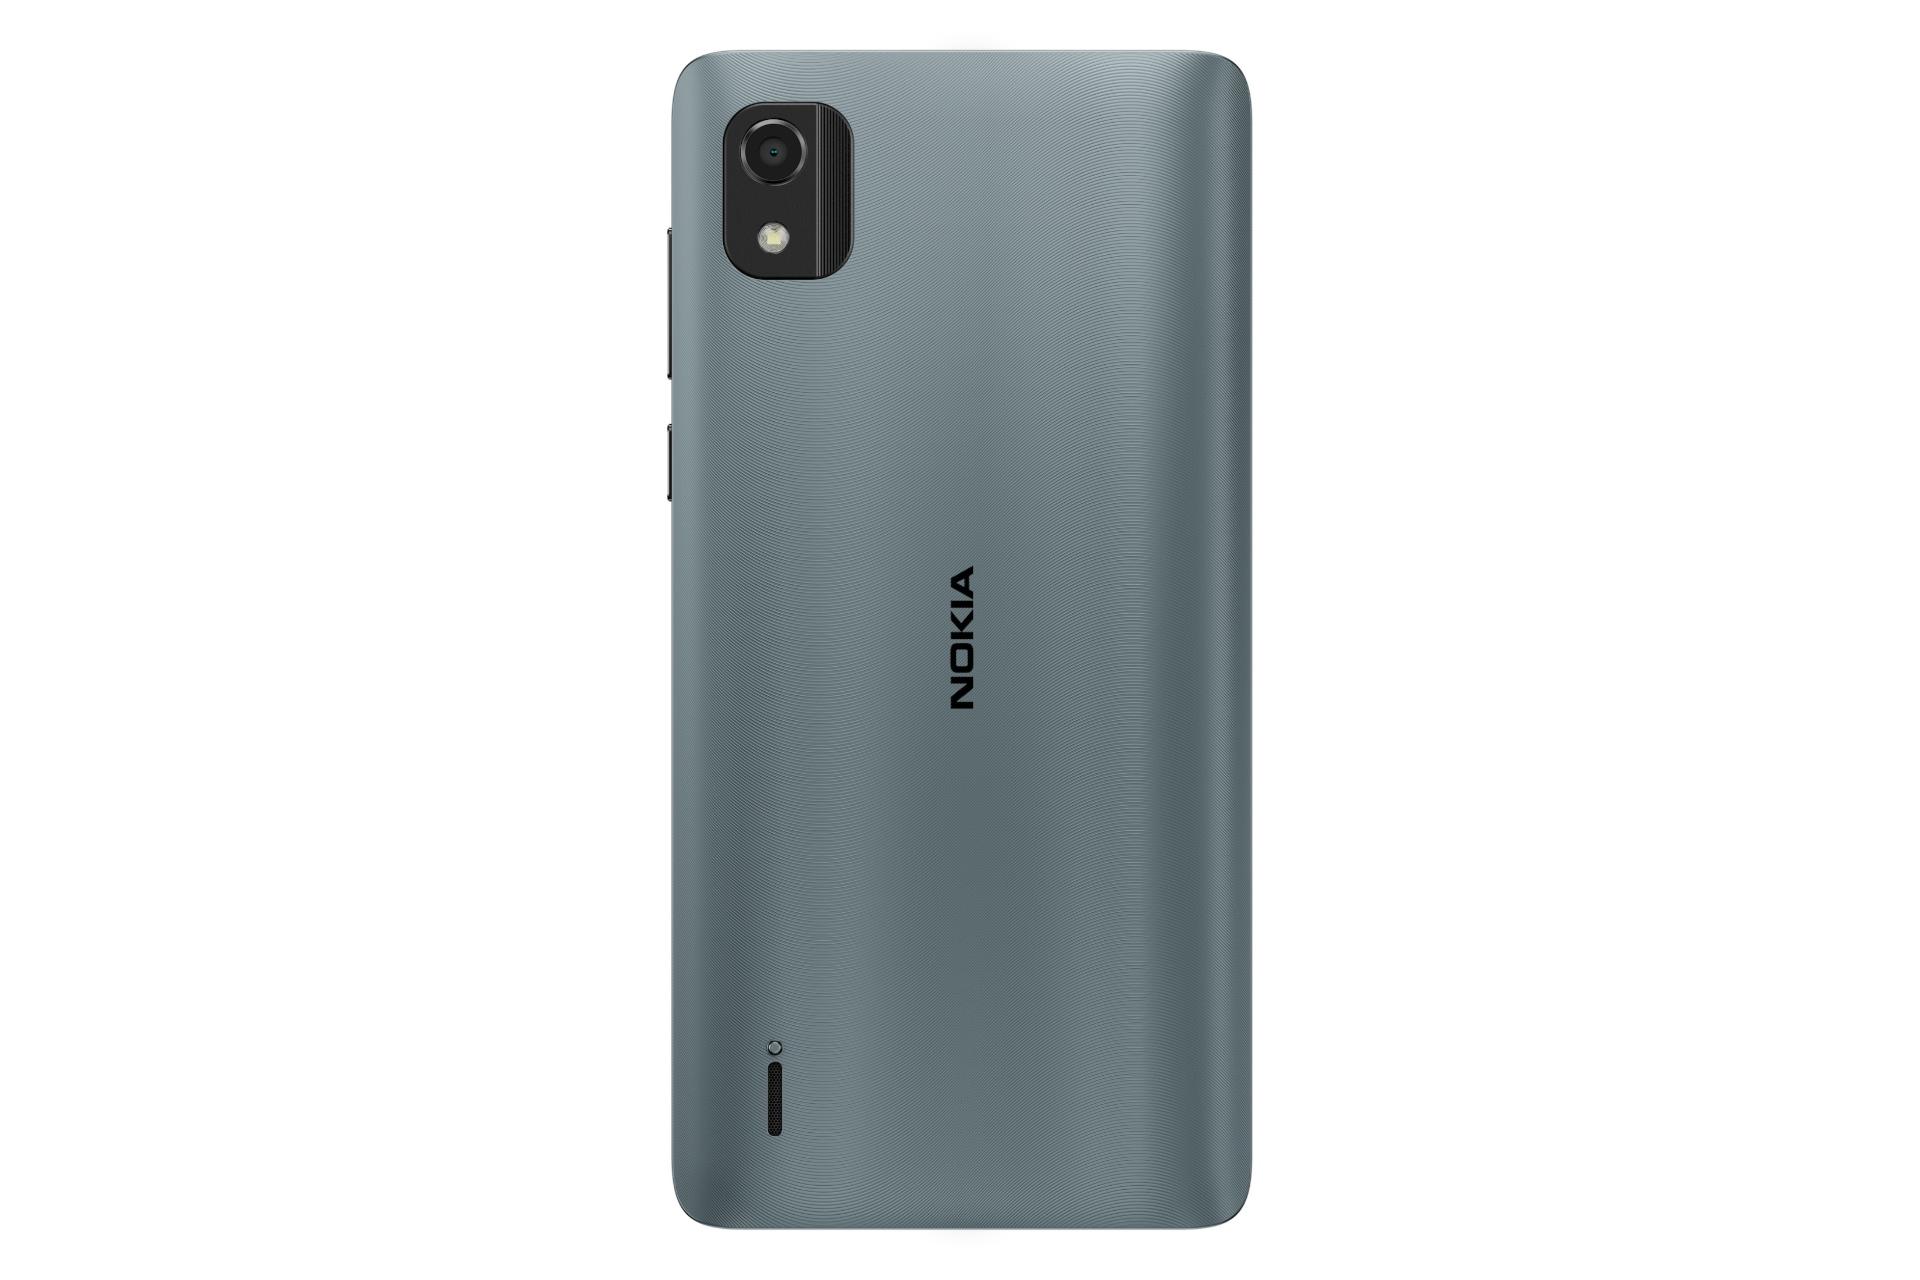 پنل پشت گوشی موبایل نوکیا C2 نسل دوم / Nokia C2 2nd Edition آبی تیره